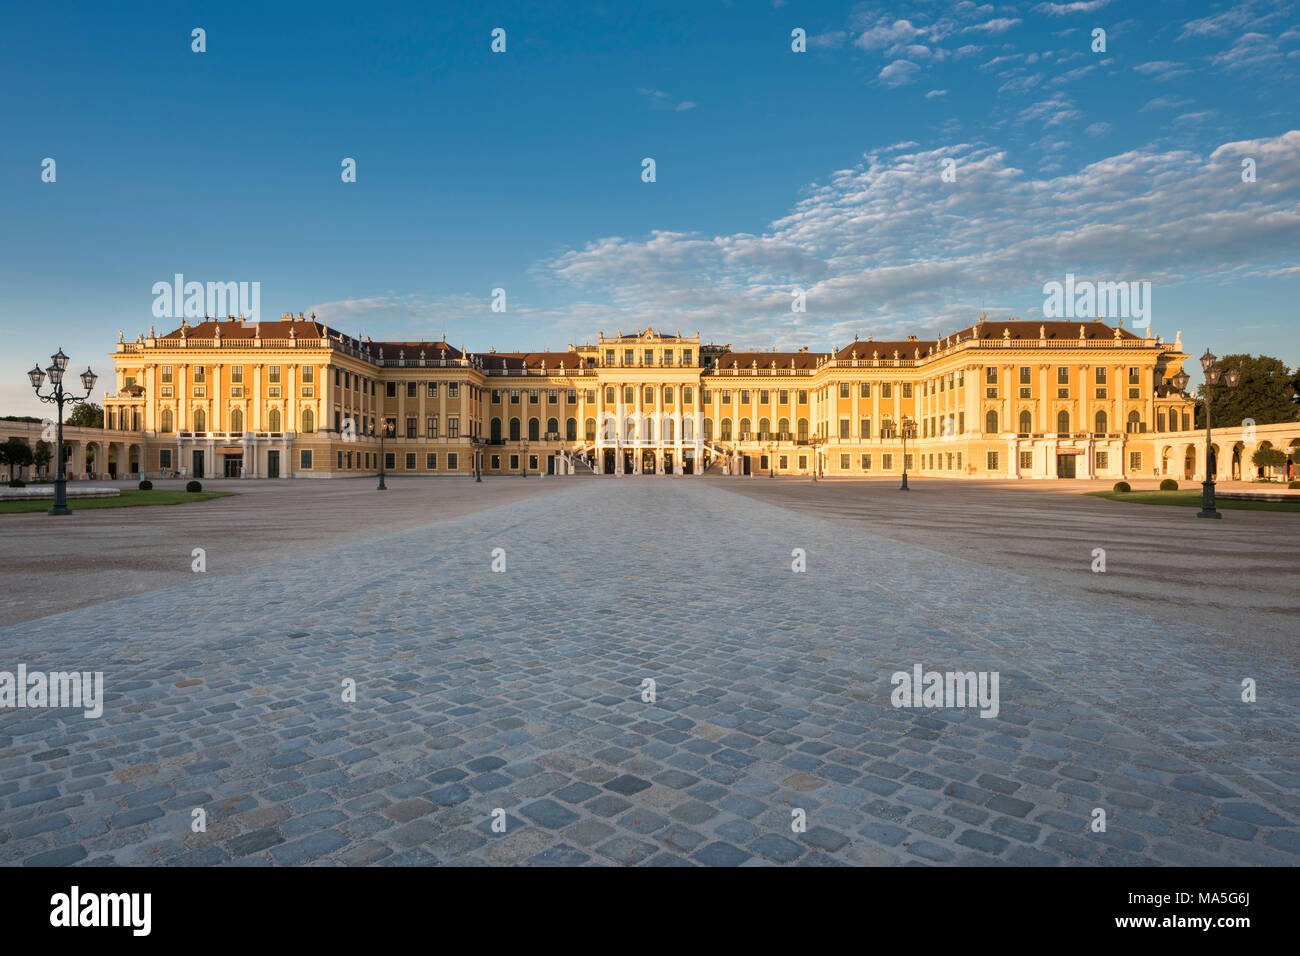 Vienne, Autriche, Europe. Le palais de Schönbrunn et de la cour de la parade au lever du soleil Banque D'Images